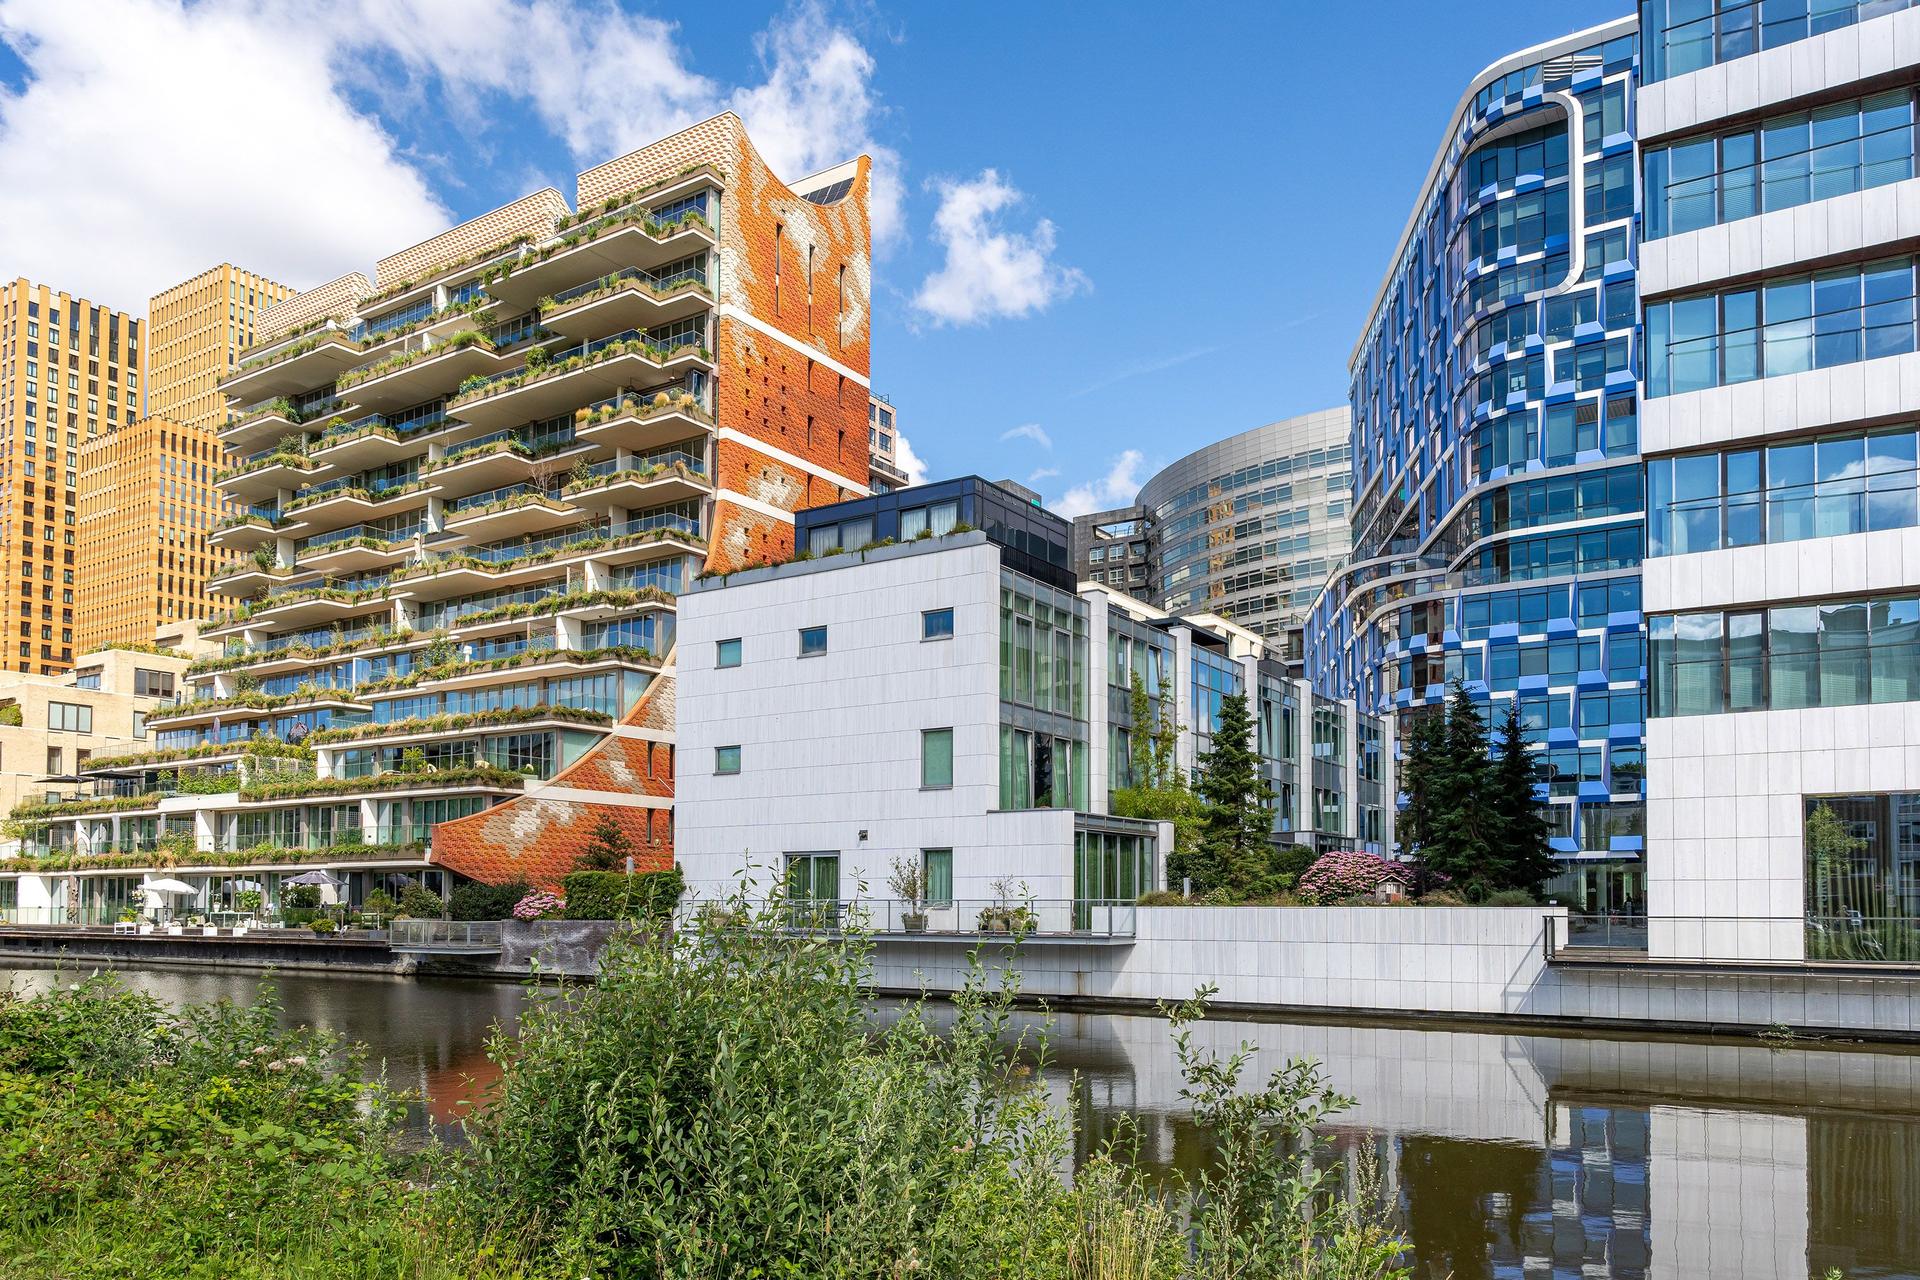 Zonnige foto van moderne kantoren en woningen in Nederland.